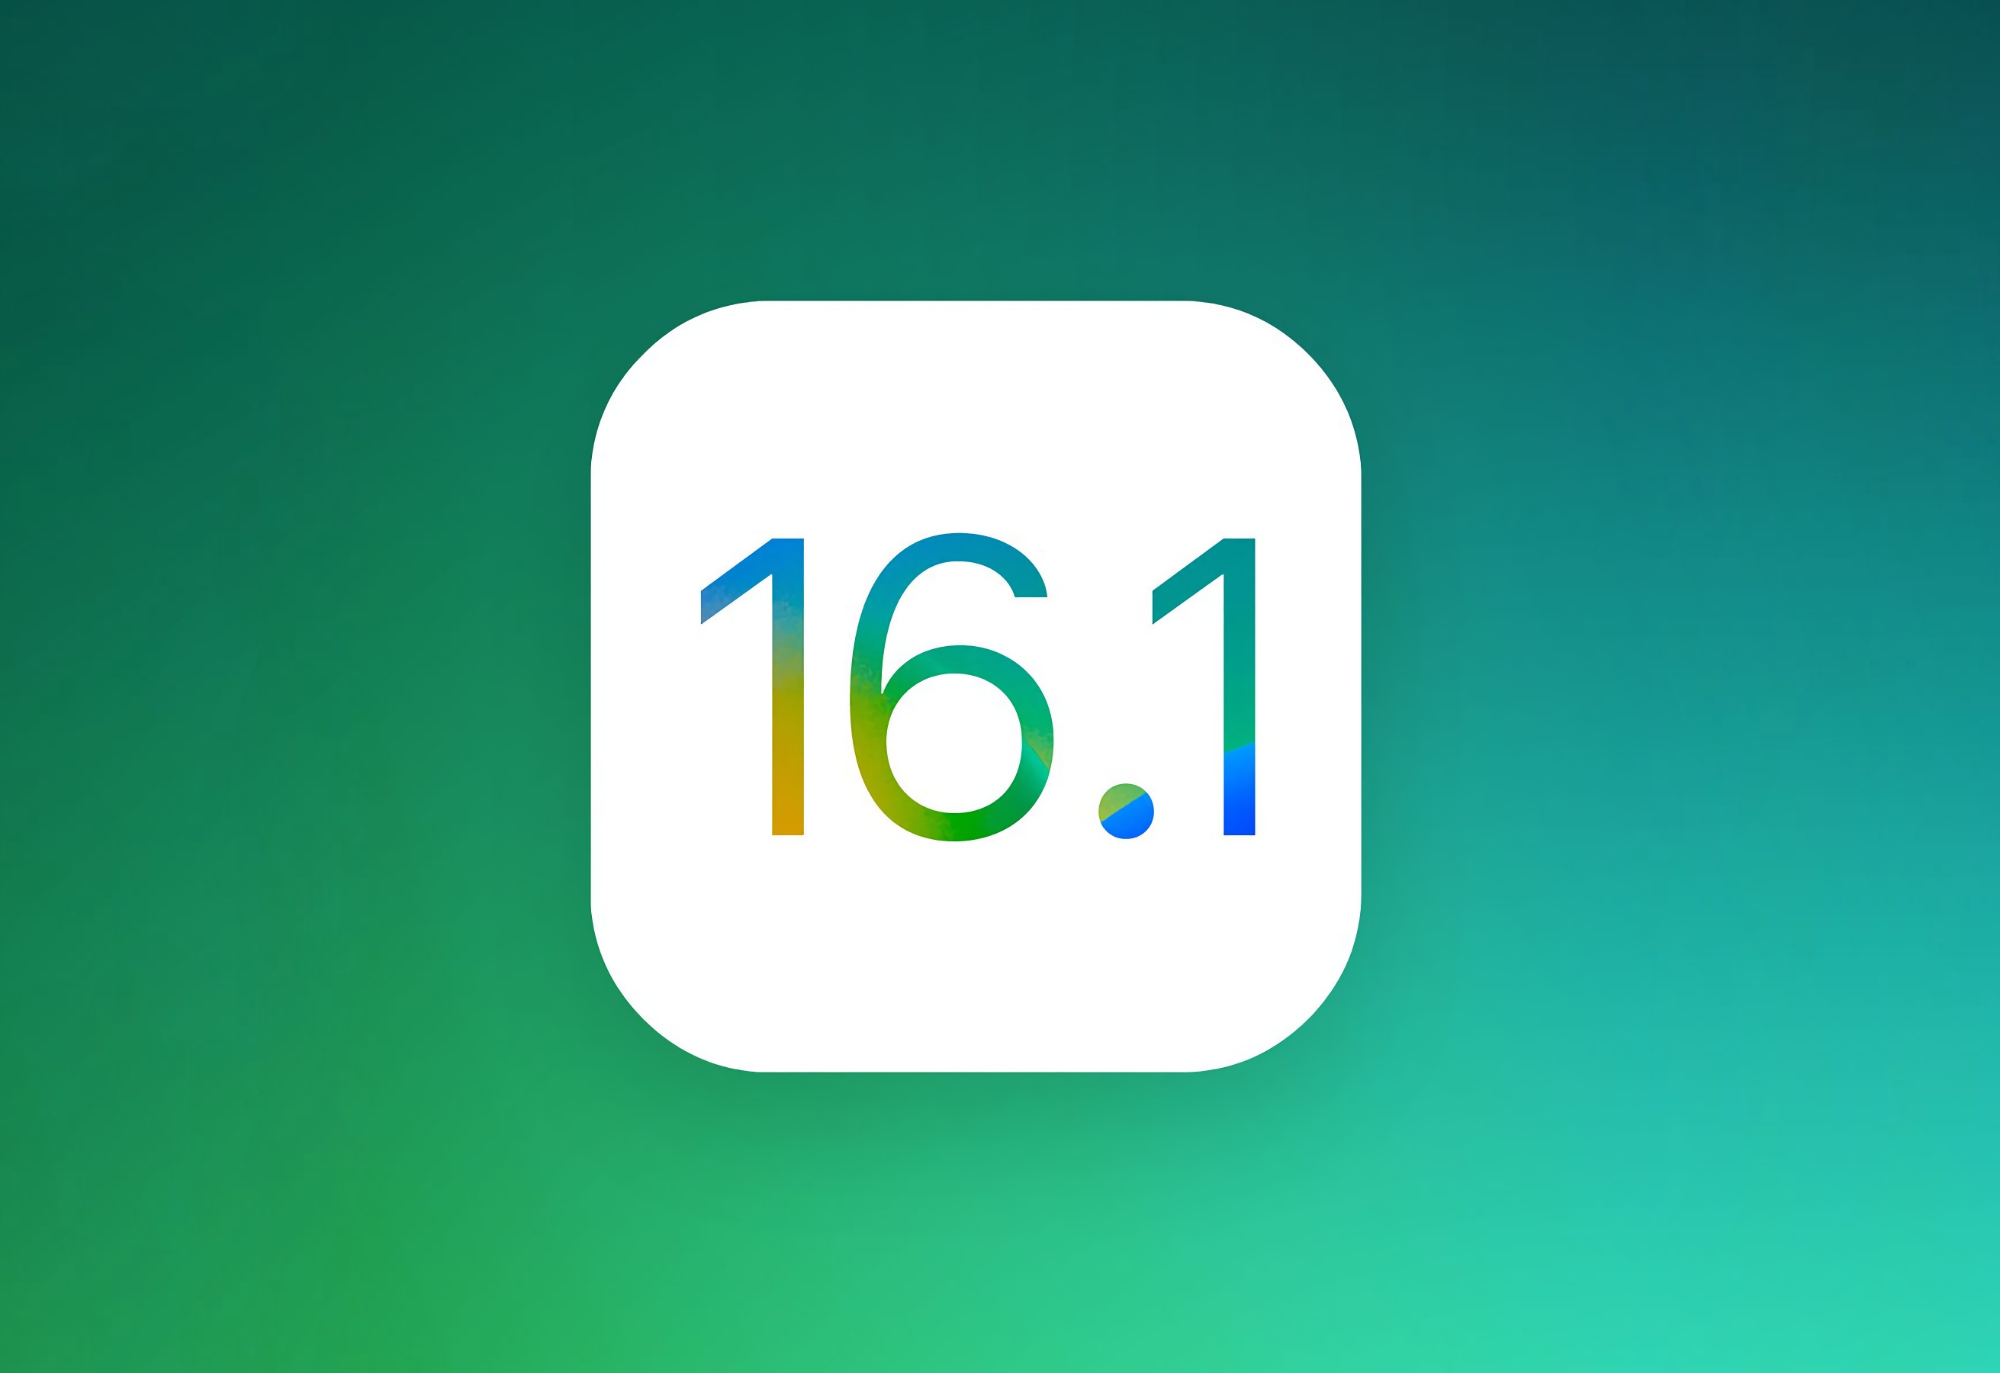 Apple випустила стабільну версію iOS 16.1: розповідаємо, що нового